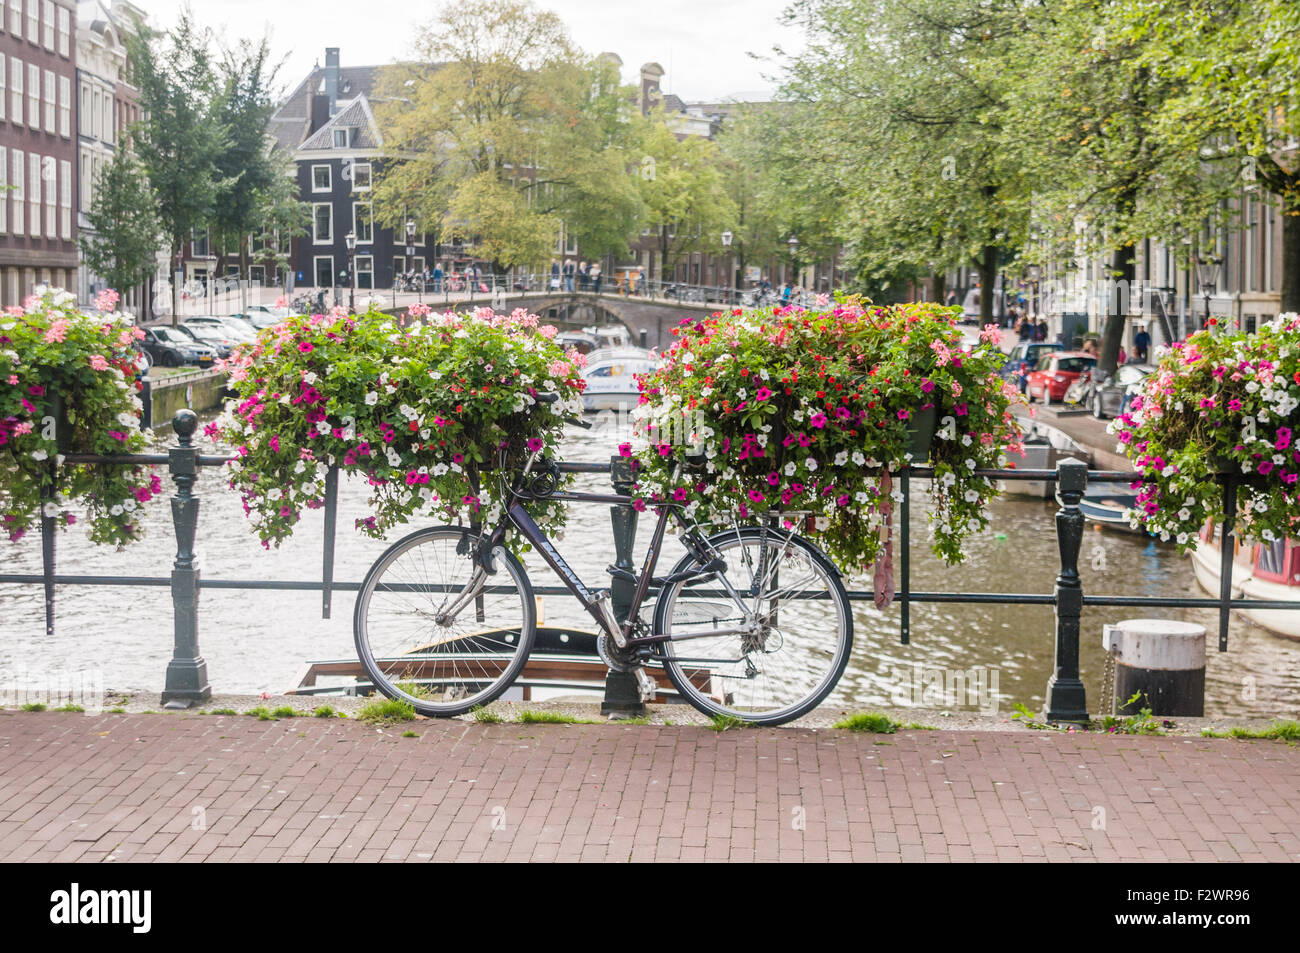 Ein Fahrrad mit Blumen auf einer Brücke über einen Kanal in Amsterdam  Stockfotografie - Alamy